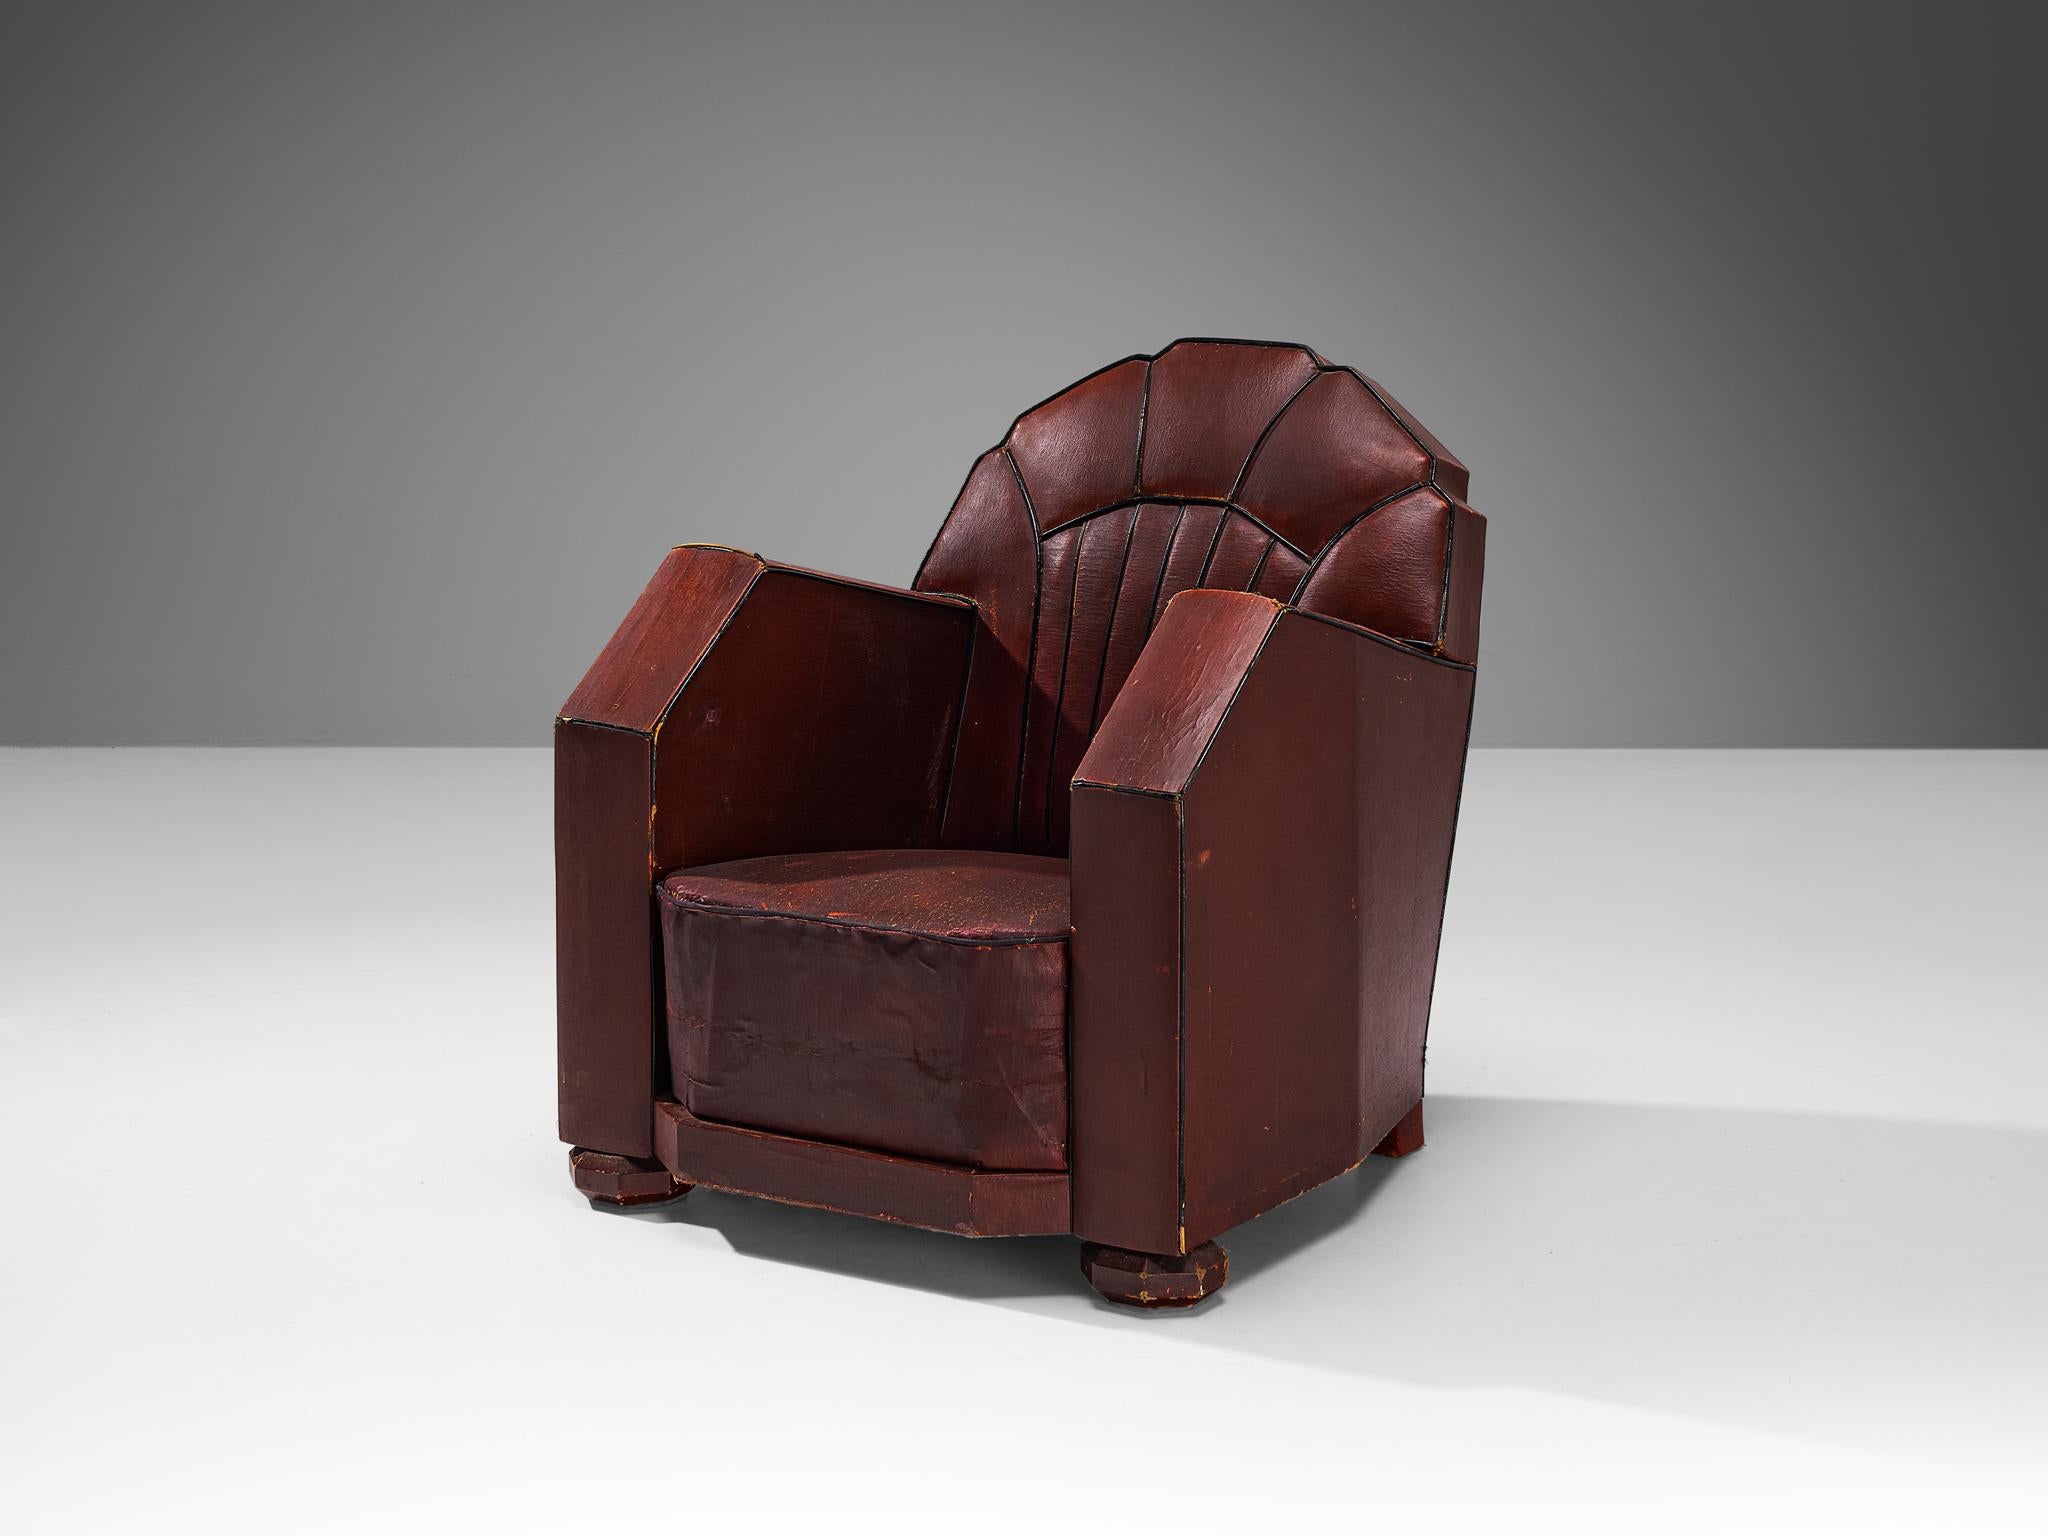 Chaise longue, cuir rouge bordeaux, bois, France, années 1930

Ce fauteuil d'origine française respire incontestablement la période Art déco des années 1930. La chaise présente de belles lignes épurées et des arêtes vives. Les contours sont